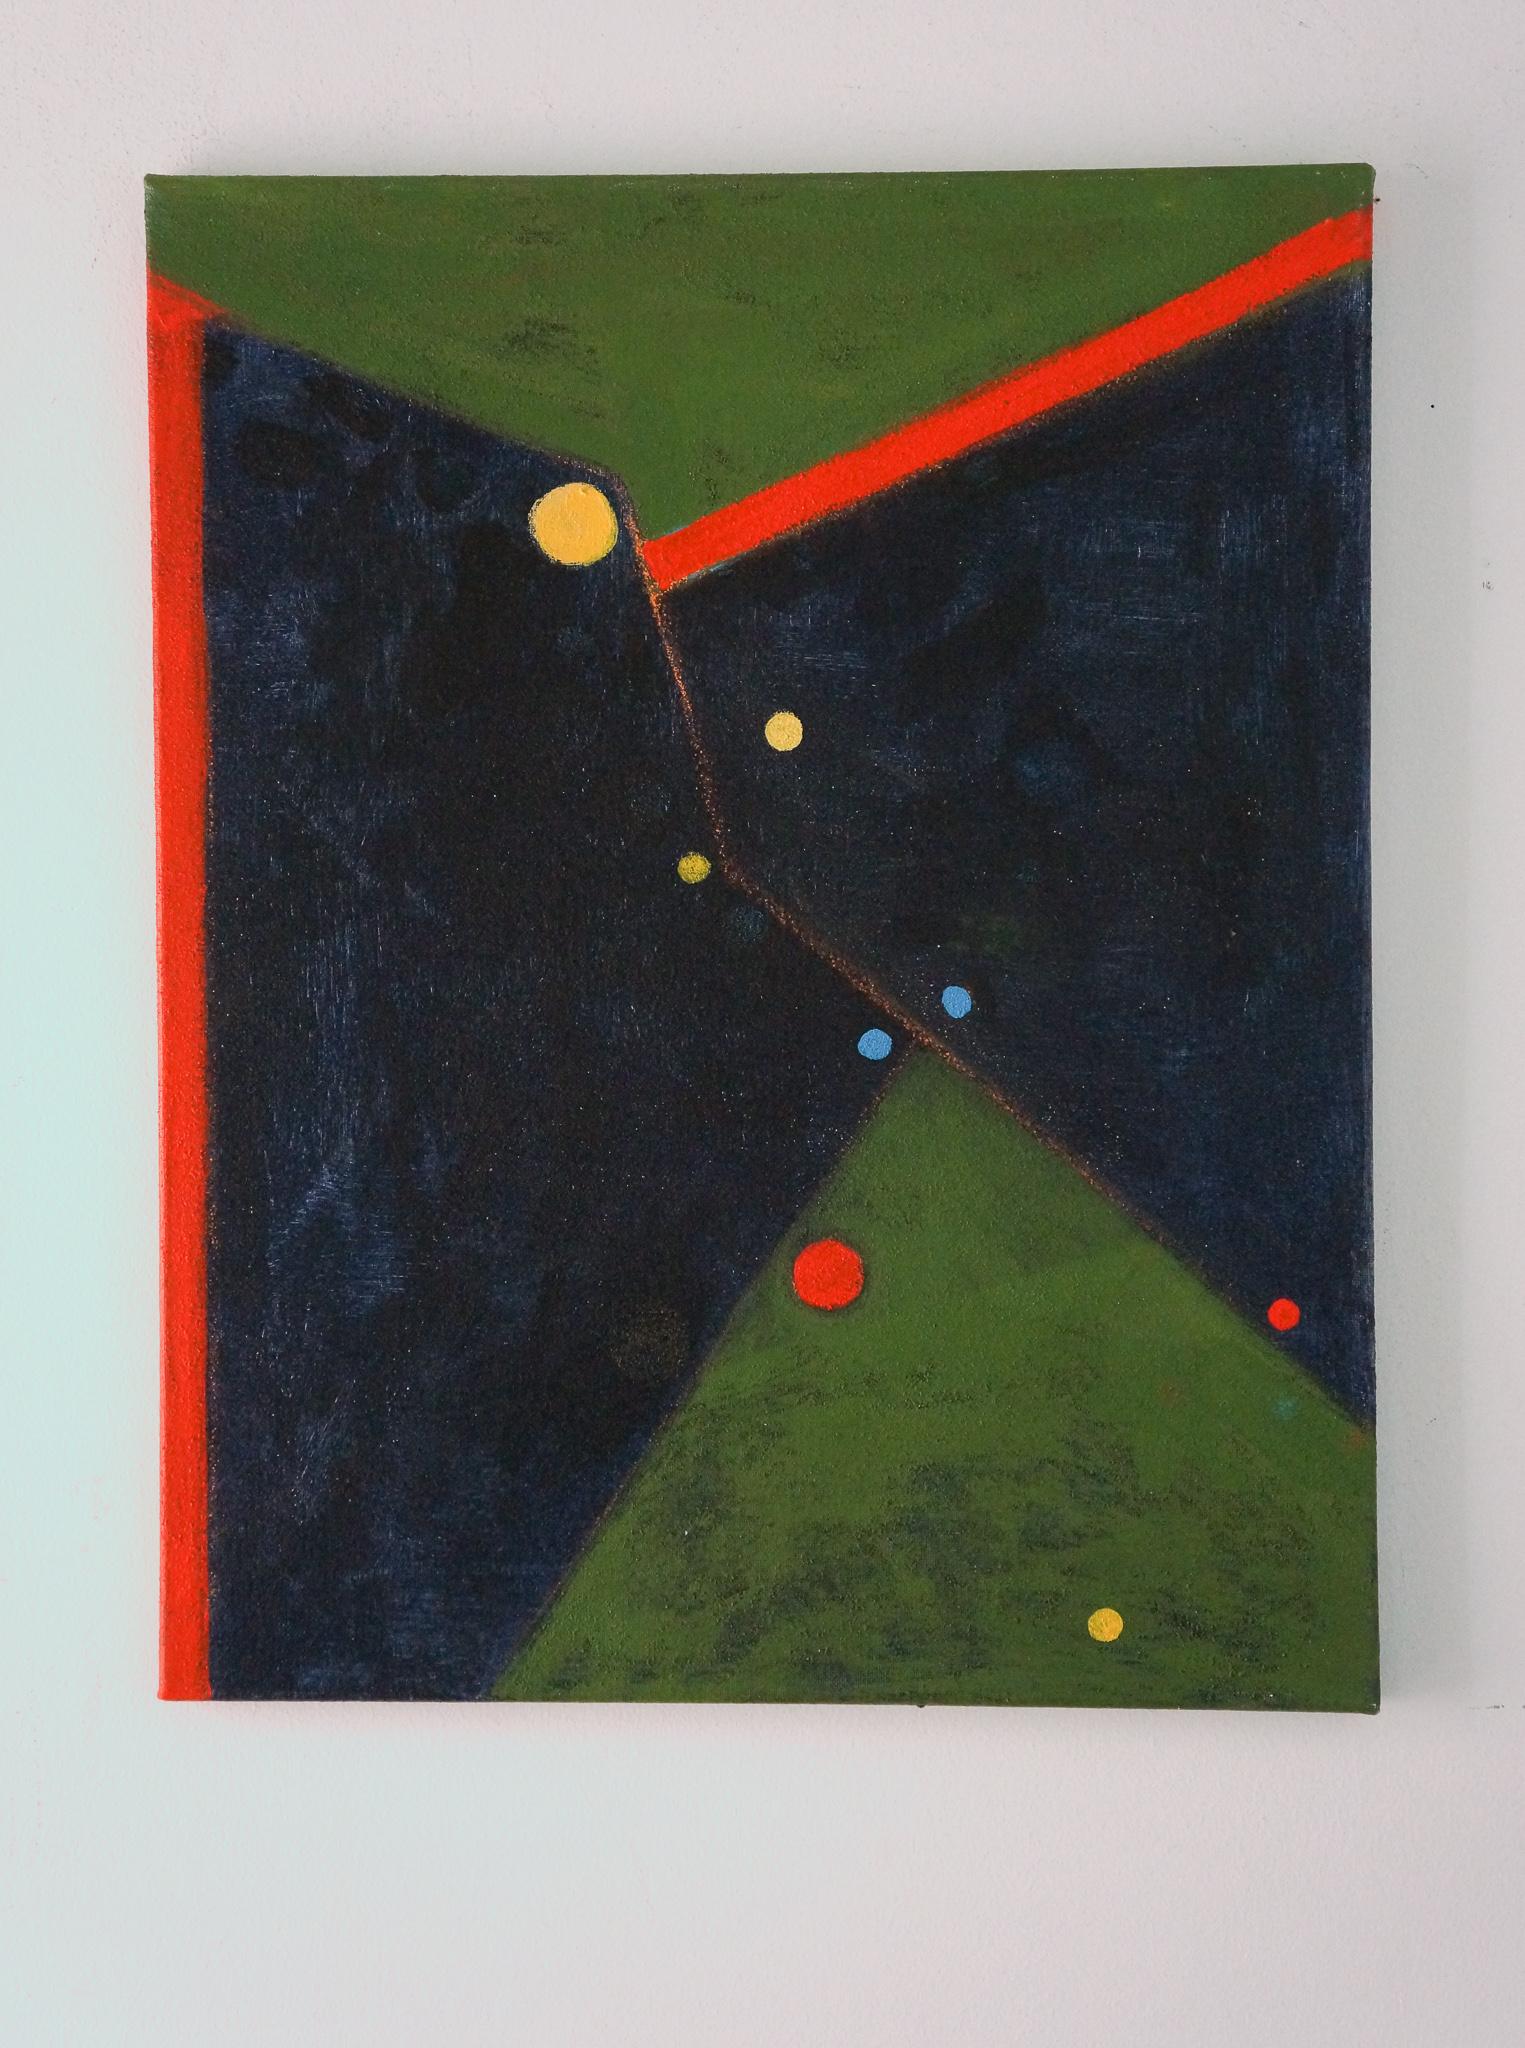 <p>Kommentare der Künstlerin<br>Die Künstlerin Linda Cassidy setzt organisch organisierte geometrische Formen in einer verführerischen Abstraktion ein. Punkte in Primärfarben liegen auf dem schwarz- und moosgrünen Hintergrund mit harten Kanten. Sie